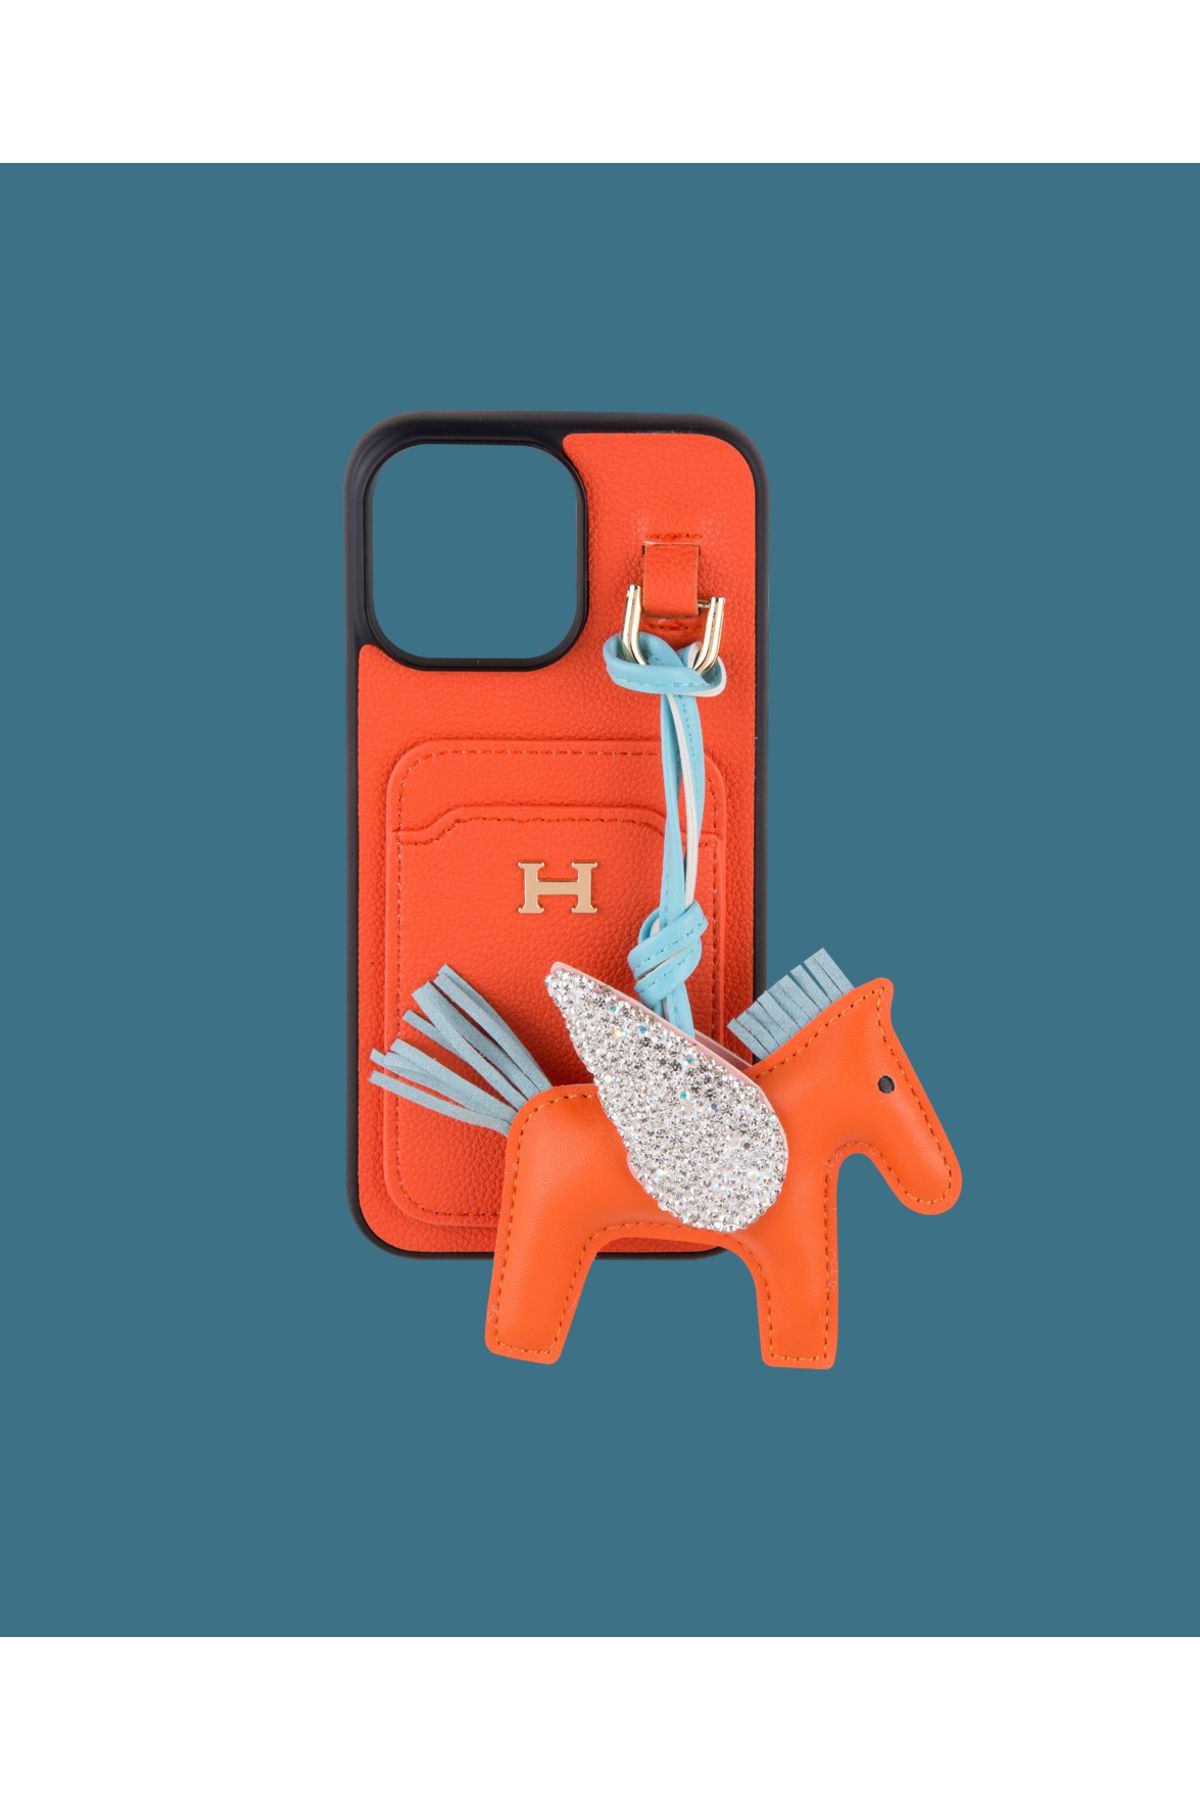 DUKKANCASE Turuncu Kartlıklı Oyuncaklı Telefon Kılıfı - DK182 - iPhone 15 Promax Uyumlu